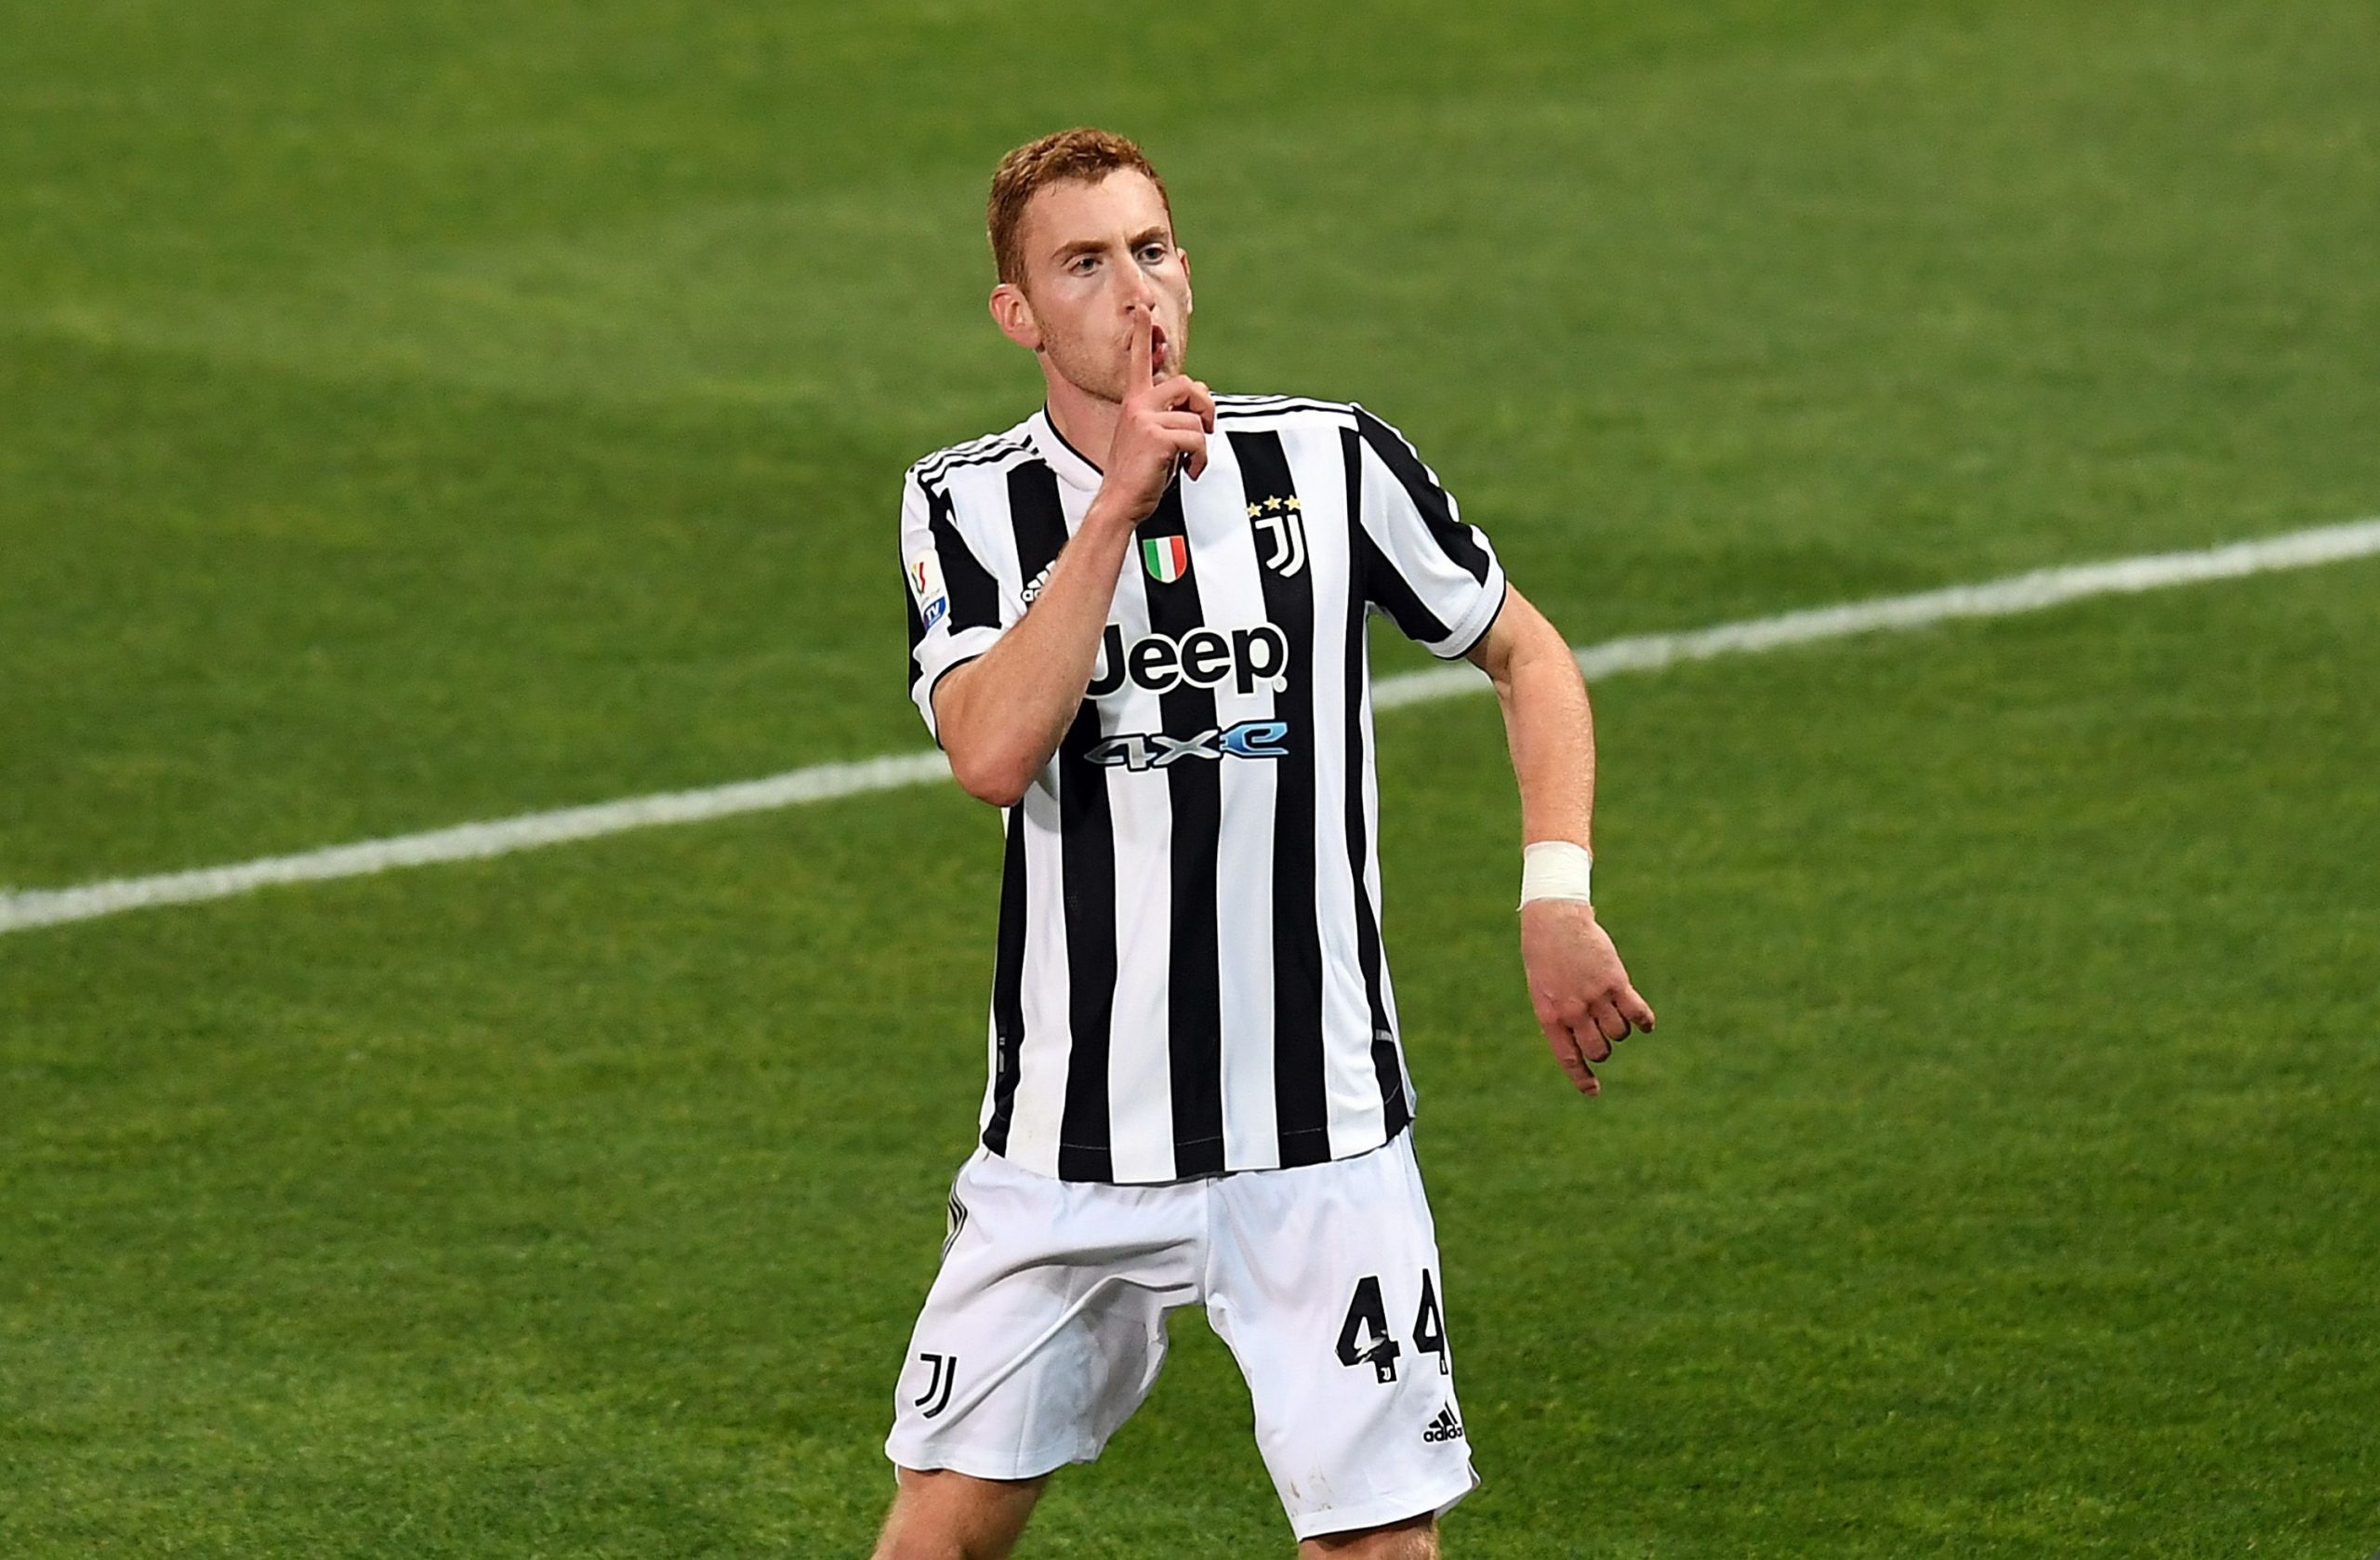 Dejan Kulusevski of Juventus celebrates after scoring.